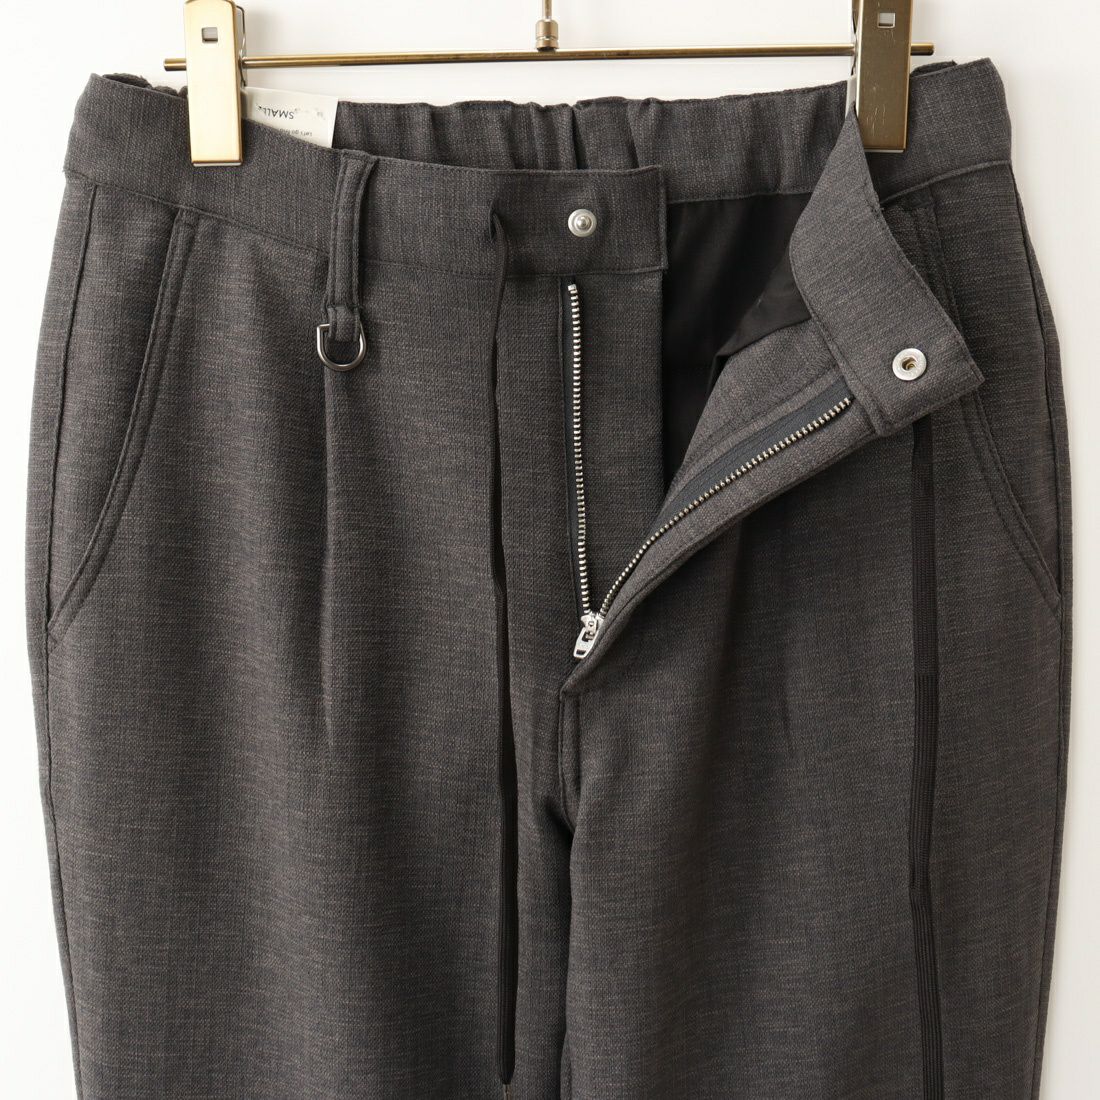 Jeans Factory Clothes [ジーンズファクトリークローズ] リランチェブッチャー1Pイージートラウザー [JFC-232-031] 6SC.GRY